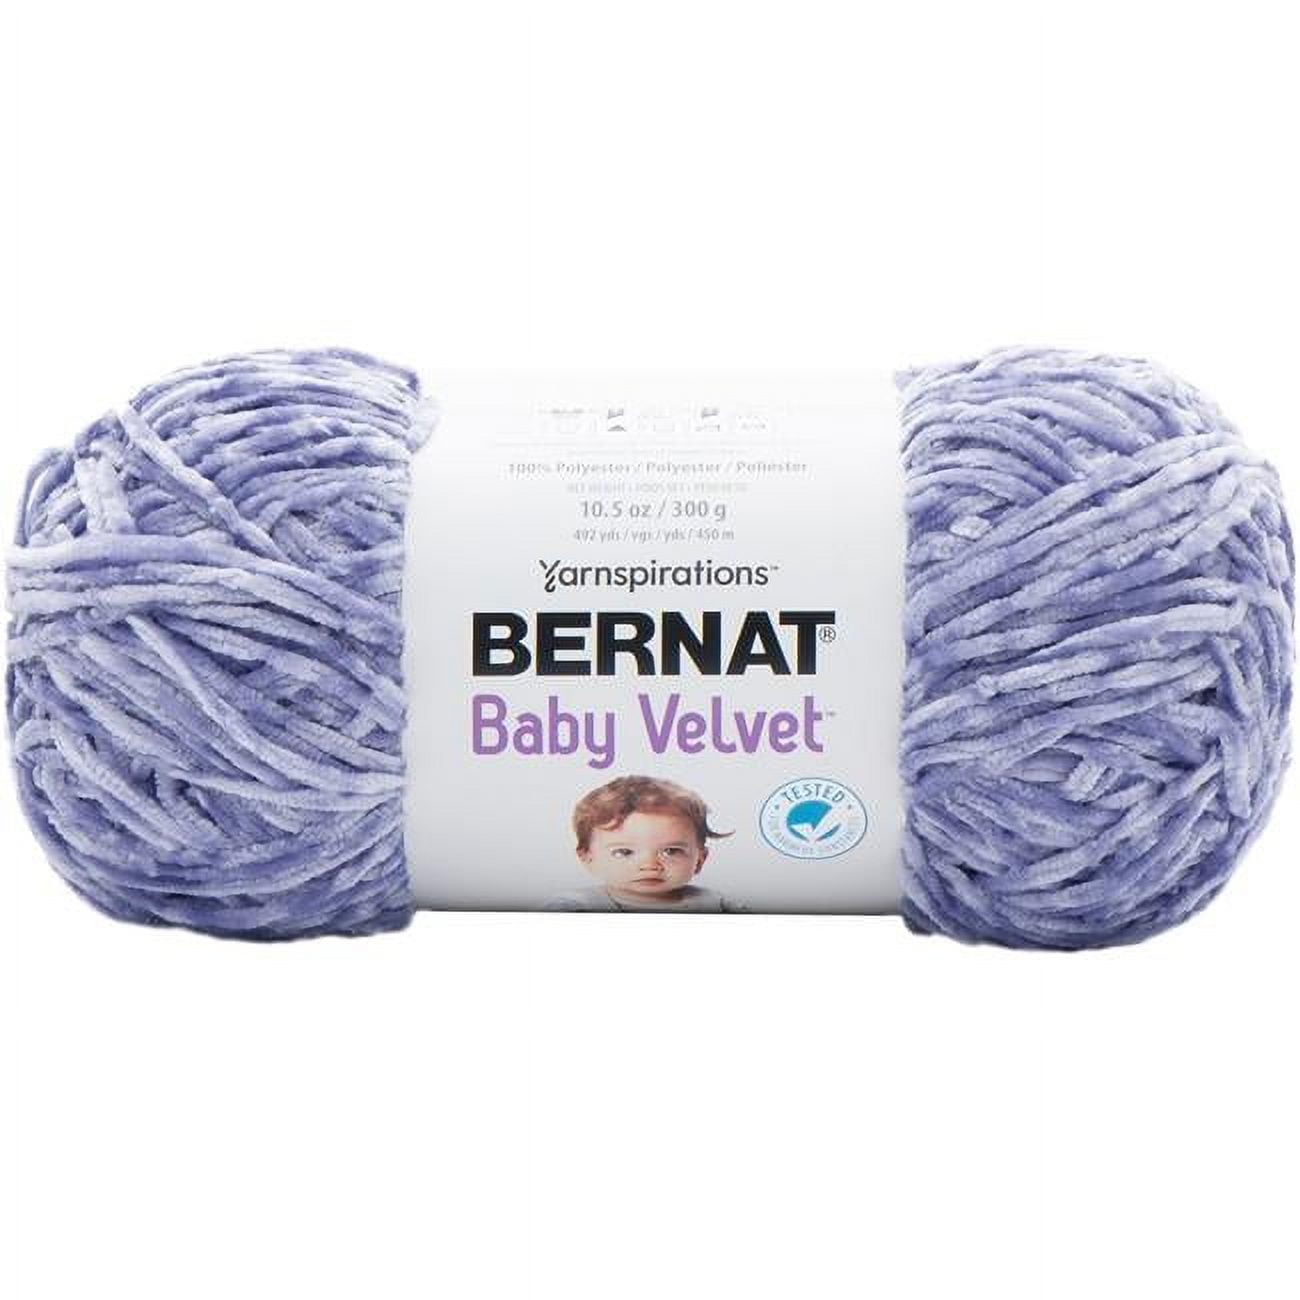  Bernat Baby Velvet Yarn